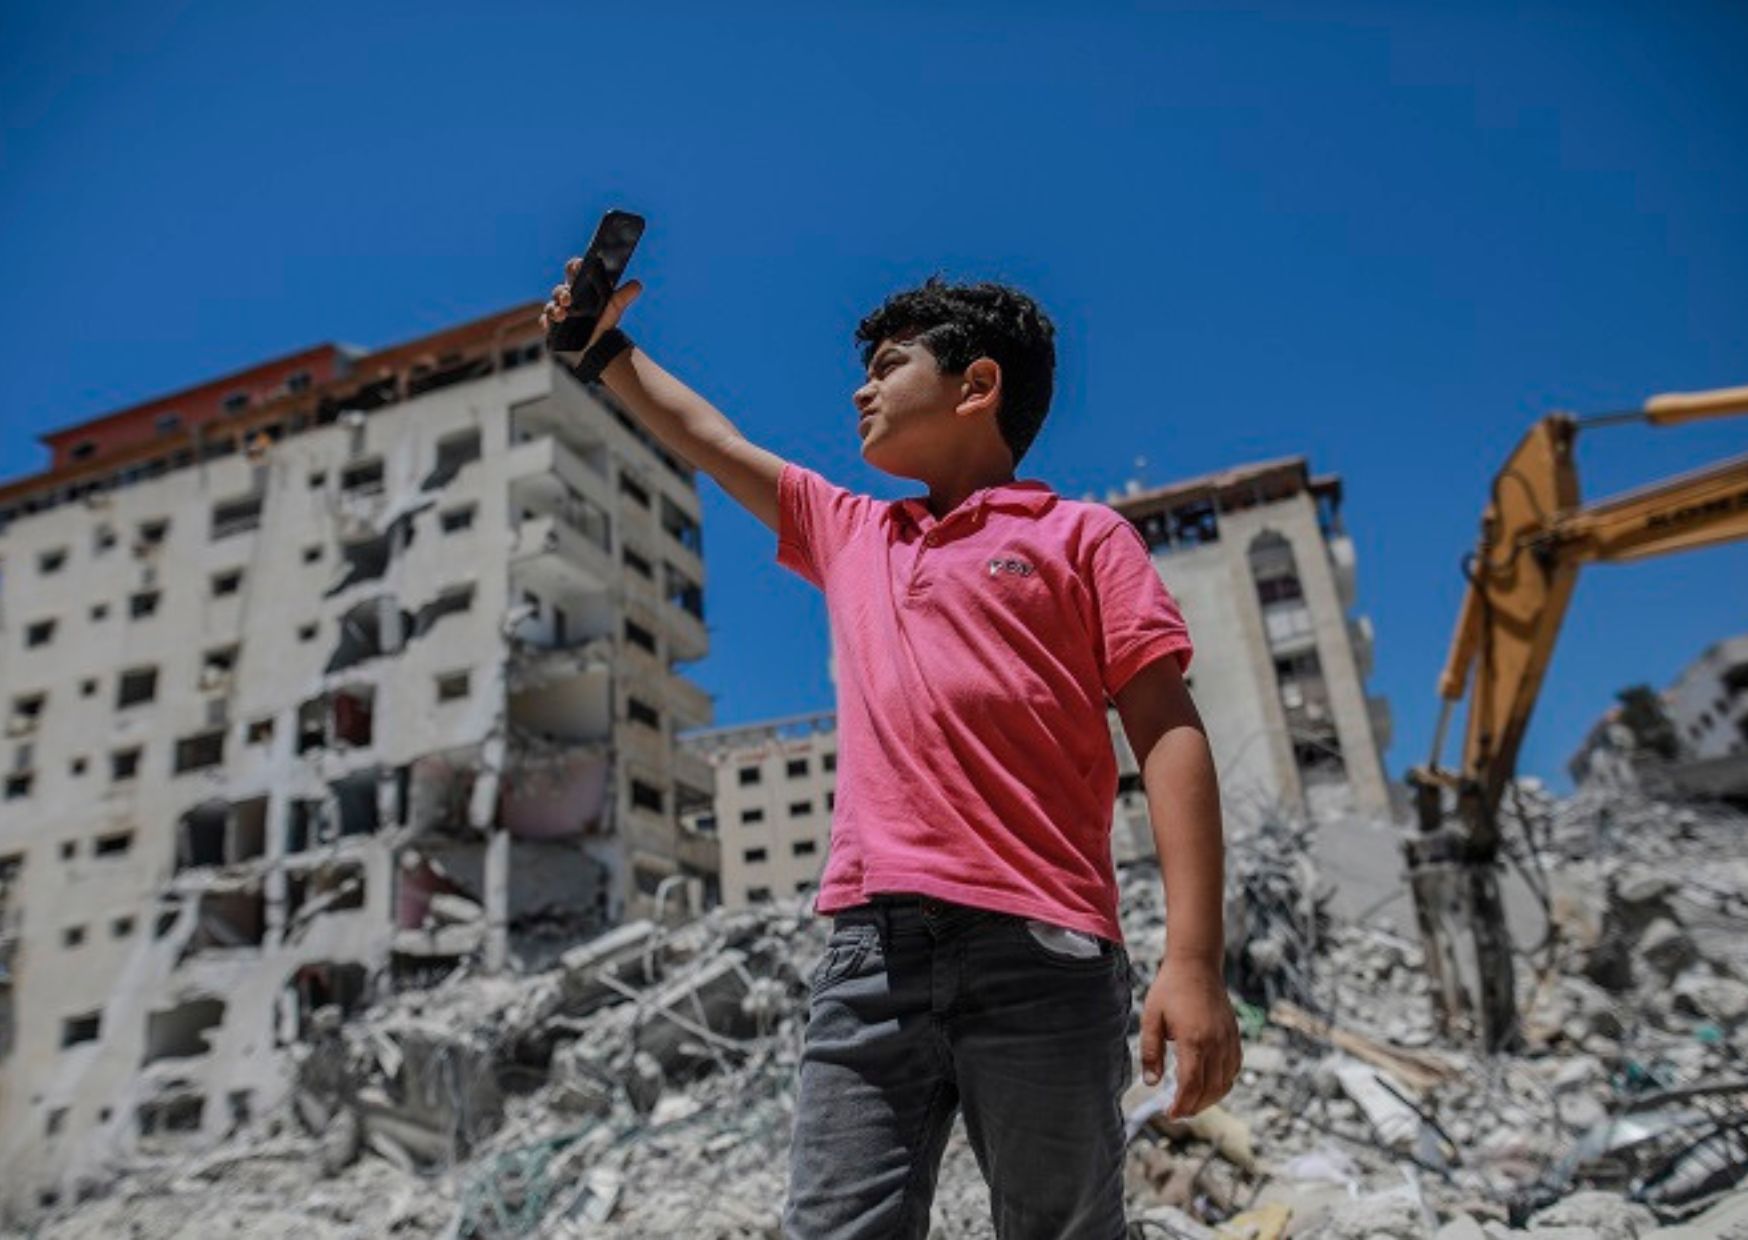 Un jeune garçon dans une zone de guerre se tient sur un tas de décombres.